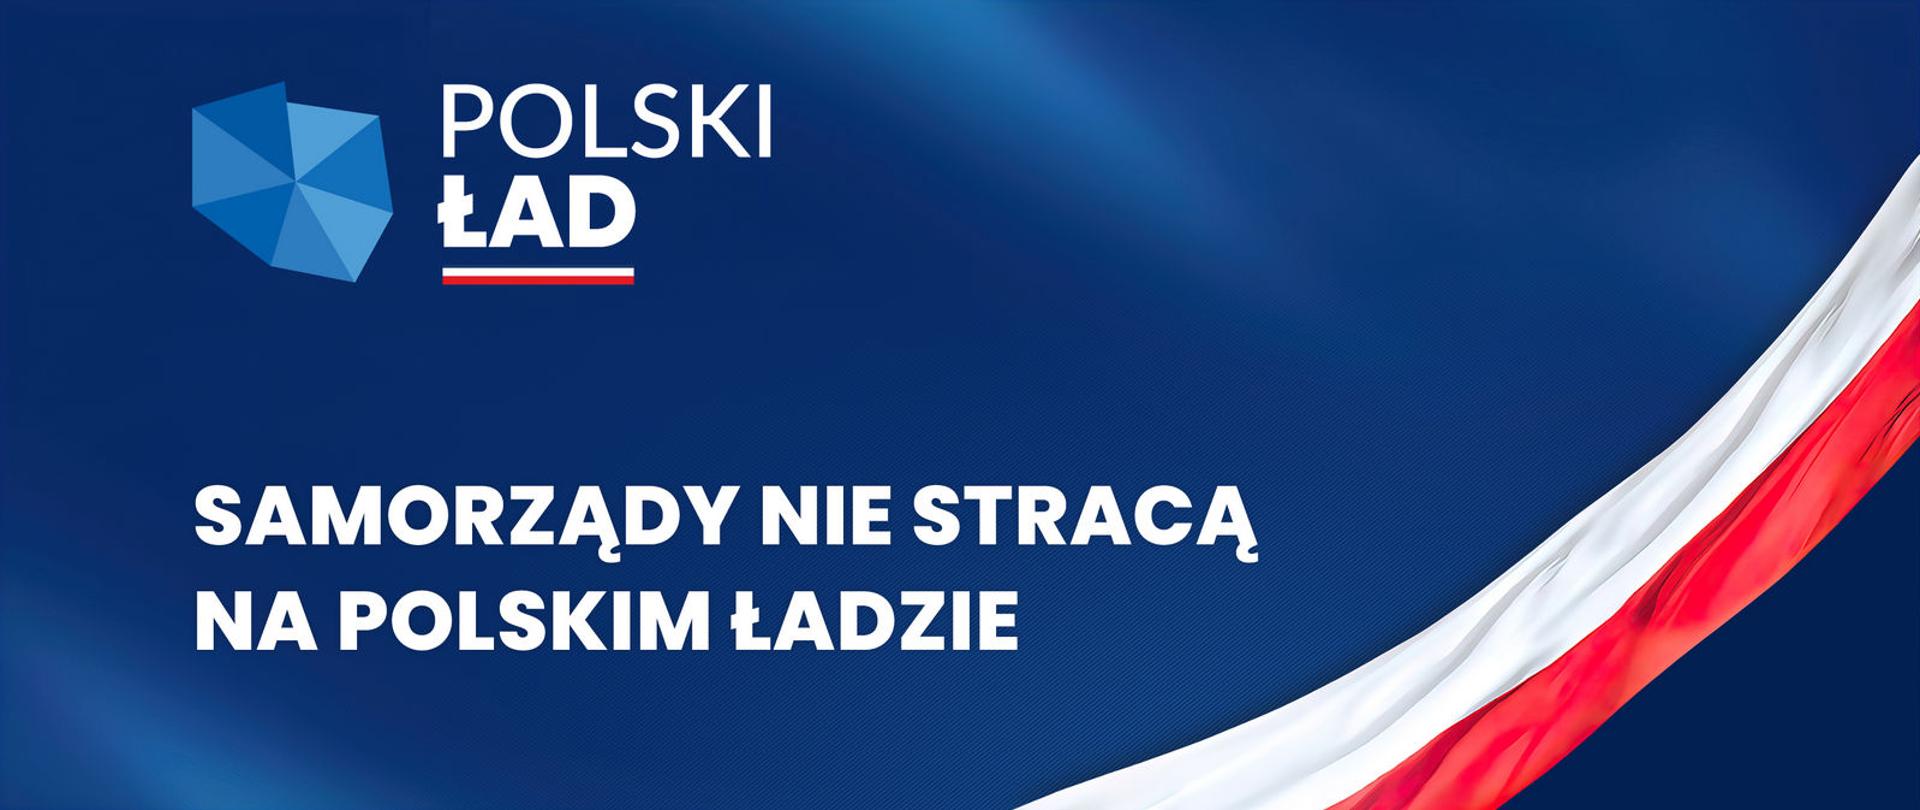 Logo Polski Ład i napis Samorządy nie stracą na Polskim Ładzie.